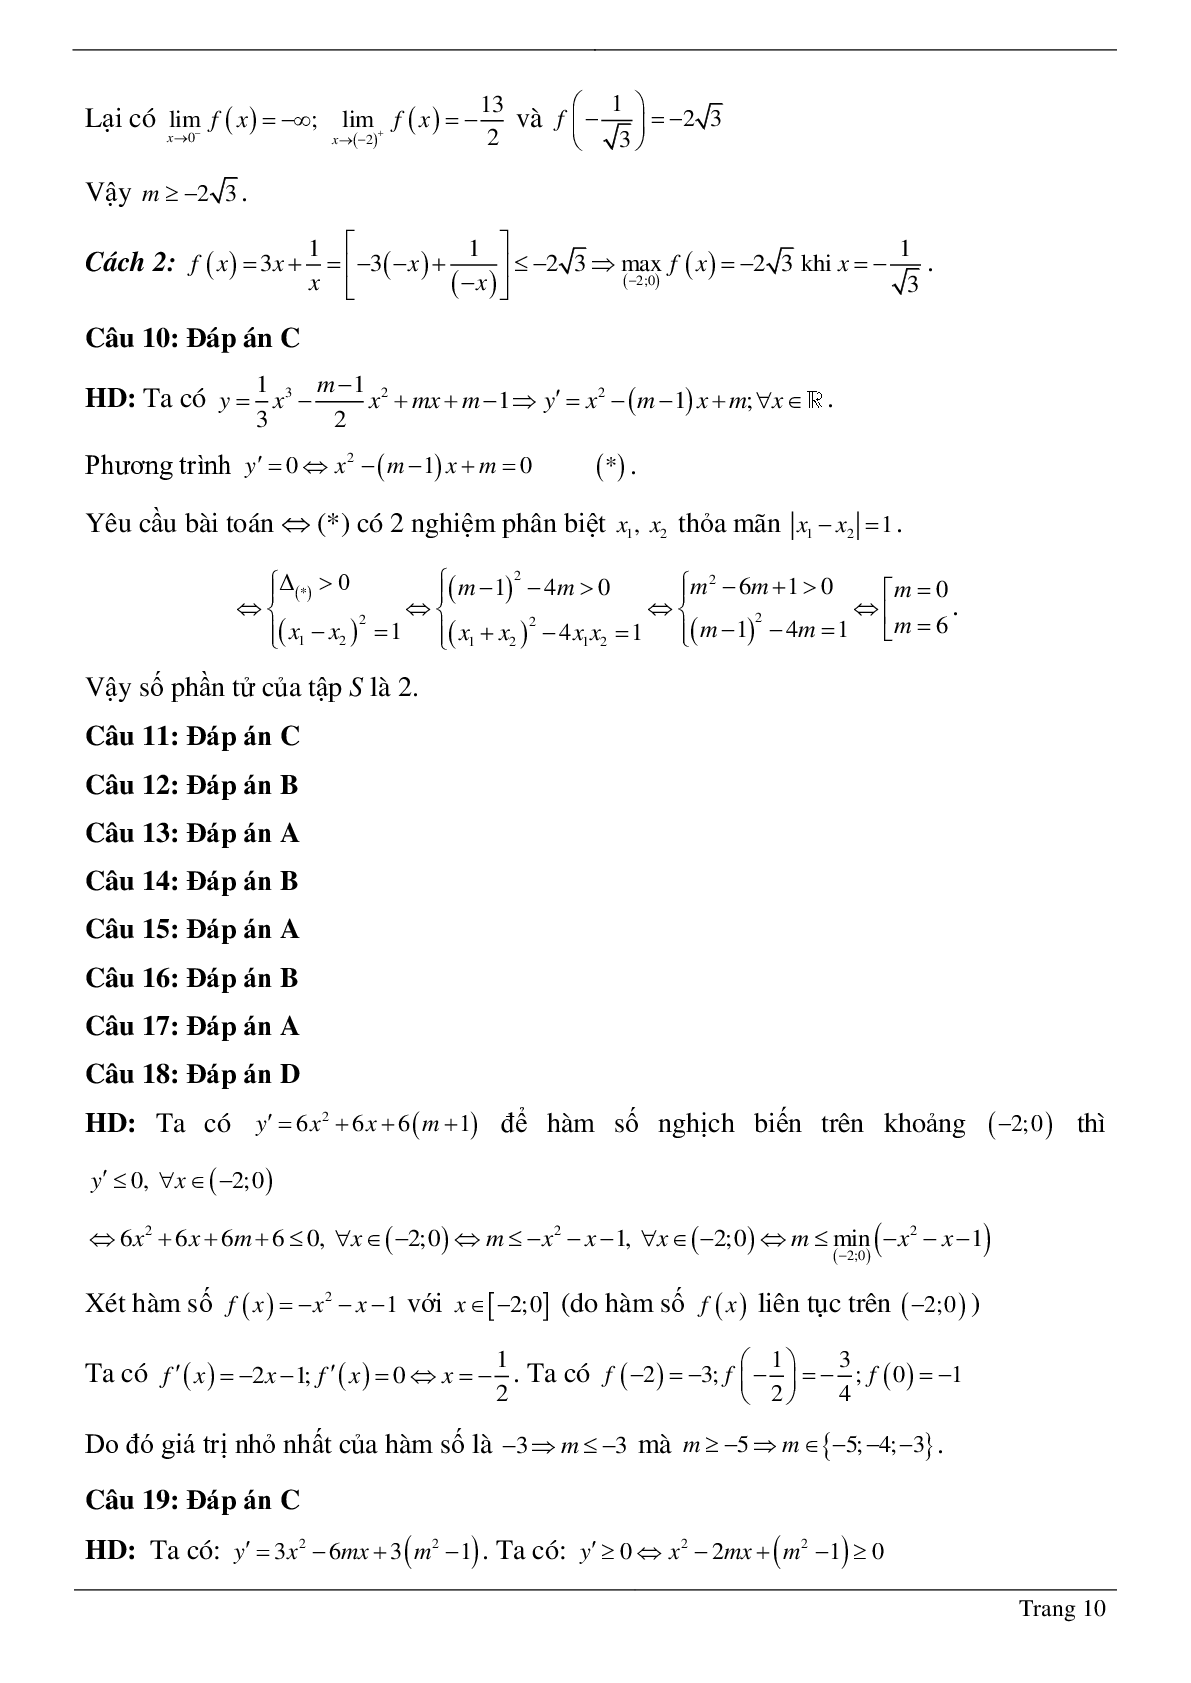 Tìm tham số M để hàm số bậc ba đồng biến, nghịch biến trên khoảng K cho trước (trang 10)